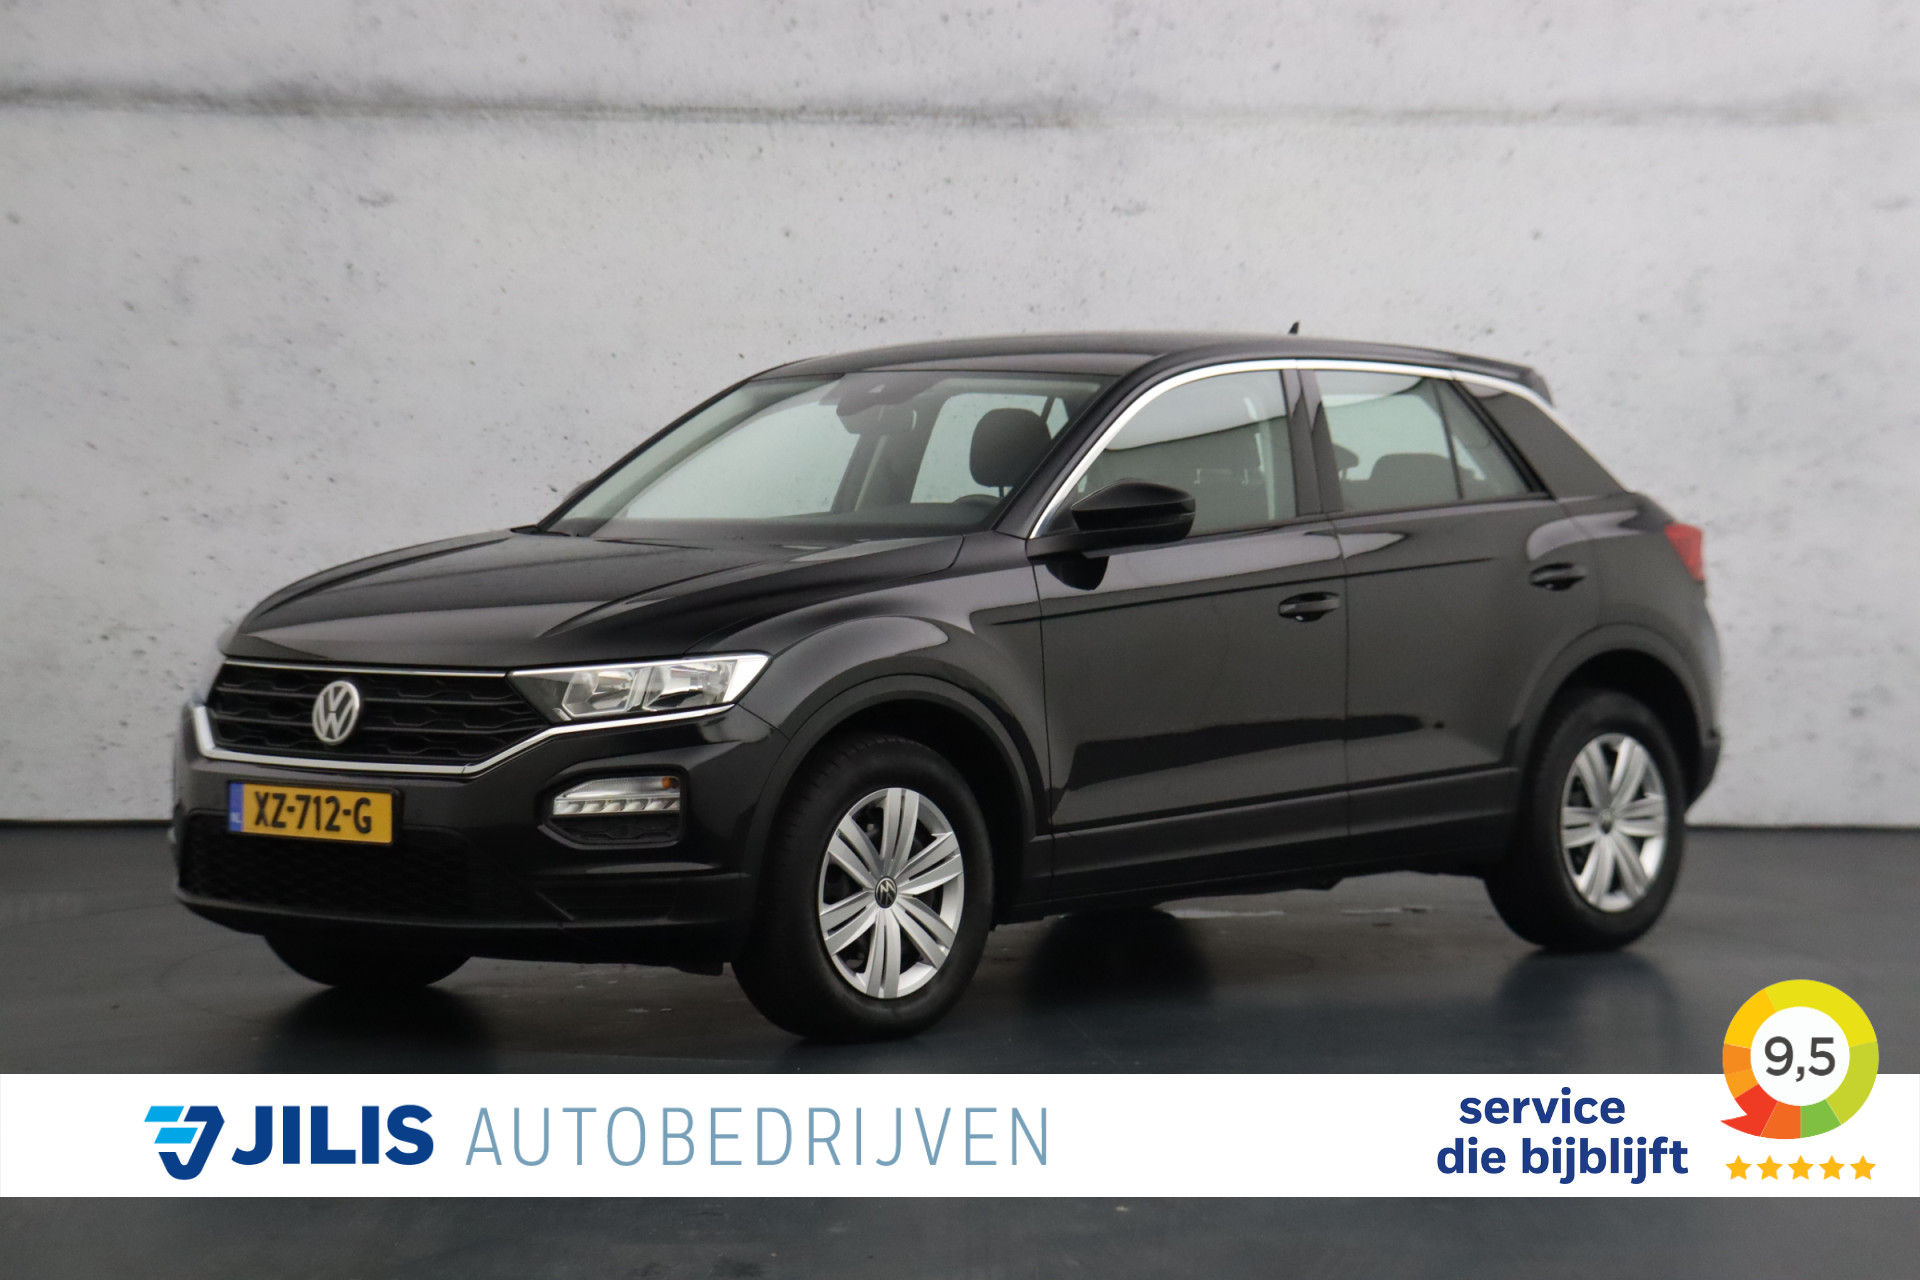 Volkswagen T-Roc 1.0 TSI 116pk | Apple carplay/Android auto | Isofix | Parkeersensoren | Lane assist bij viaBOVAG.nl